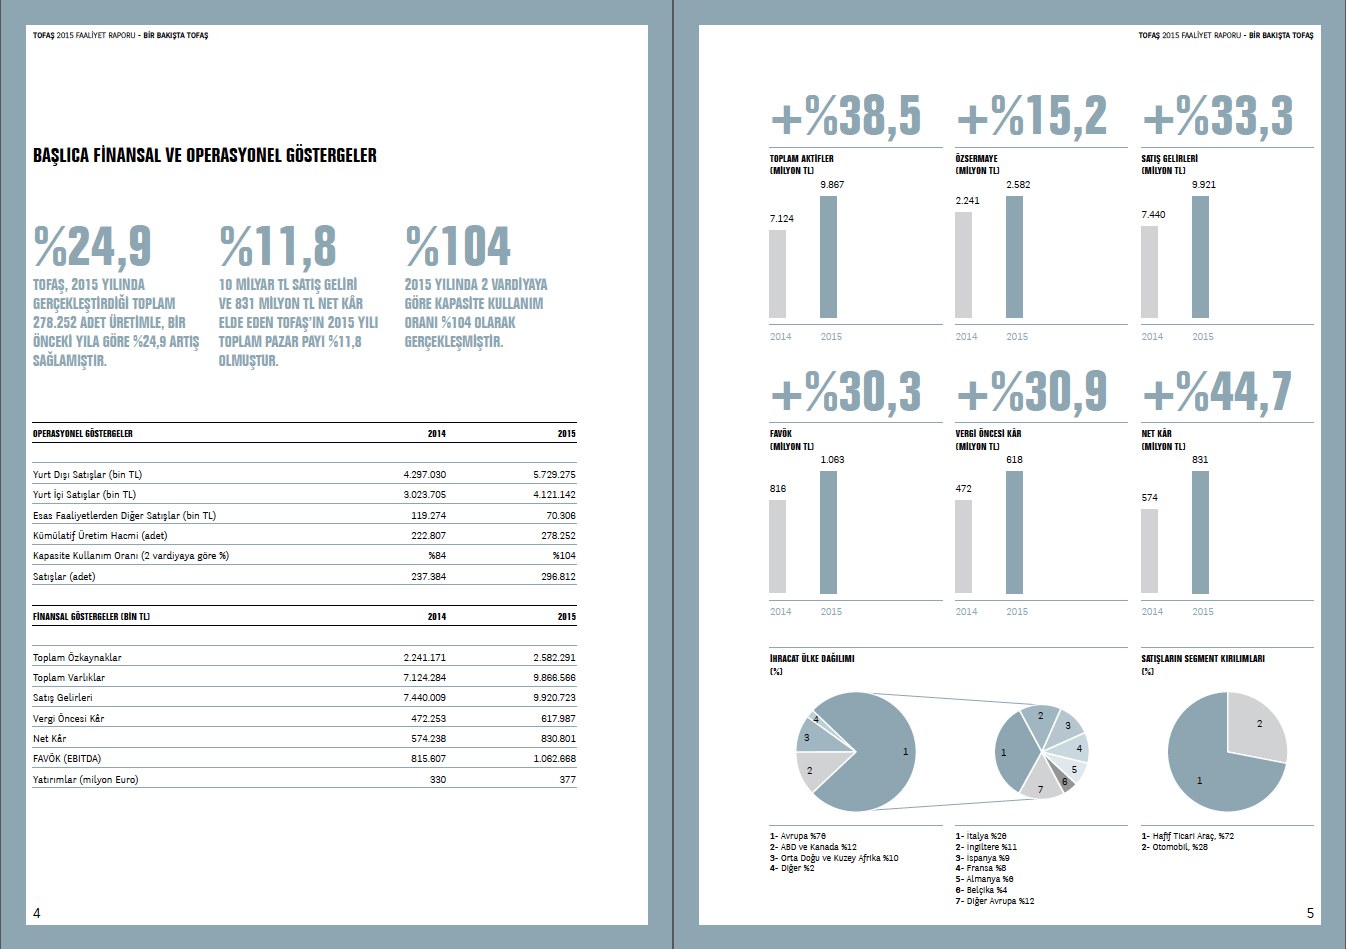 TOFAŞ / 2015 Faaliyet Raporu / 2015 Annual Report